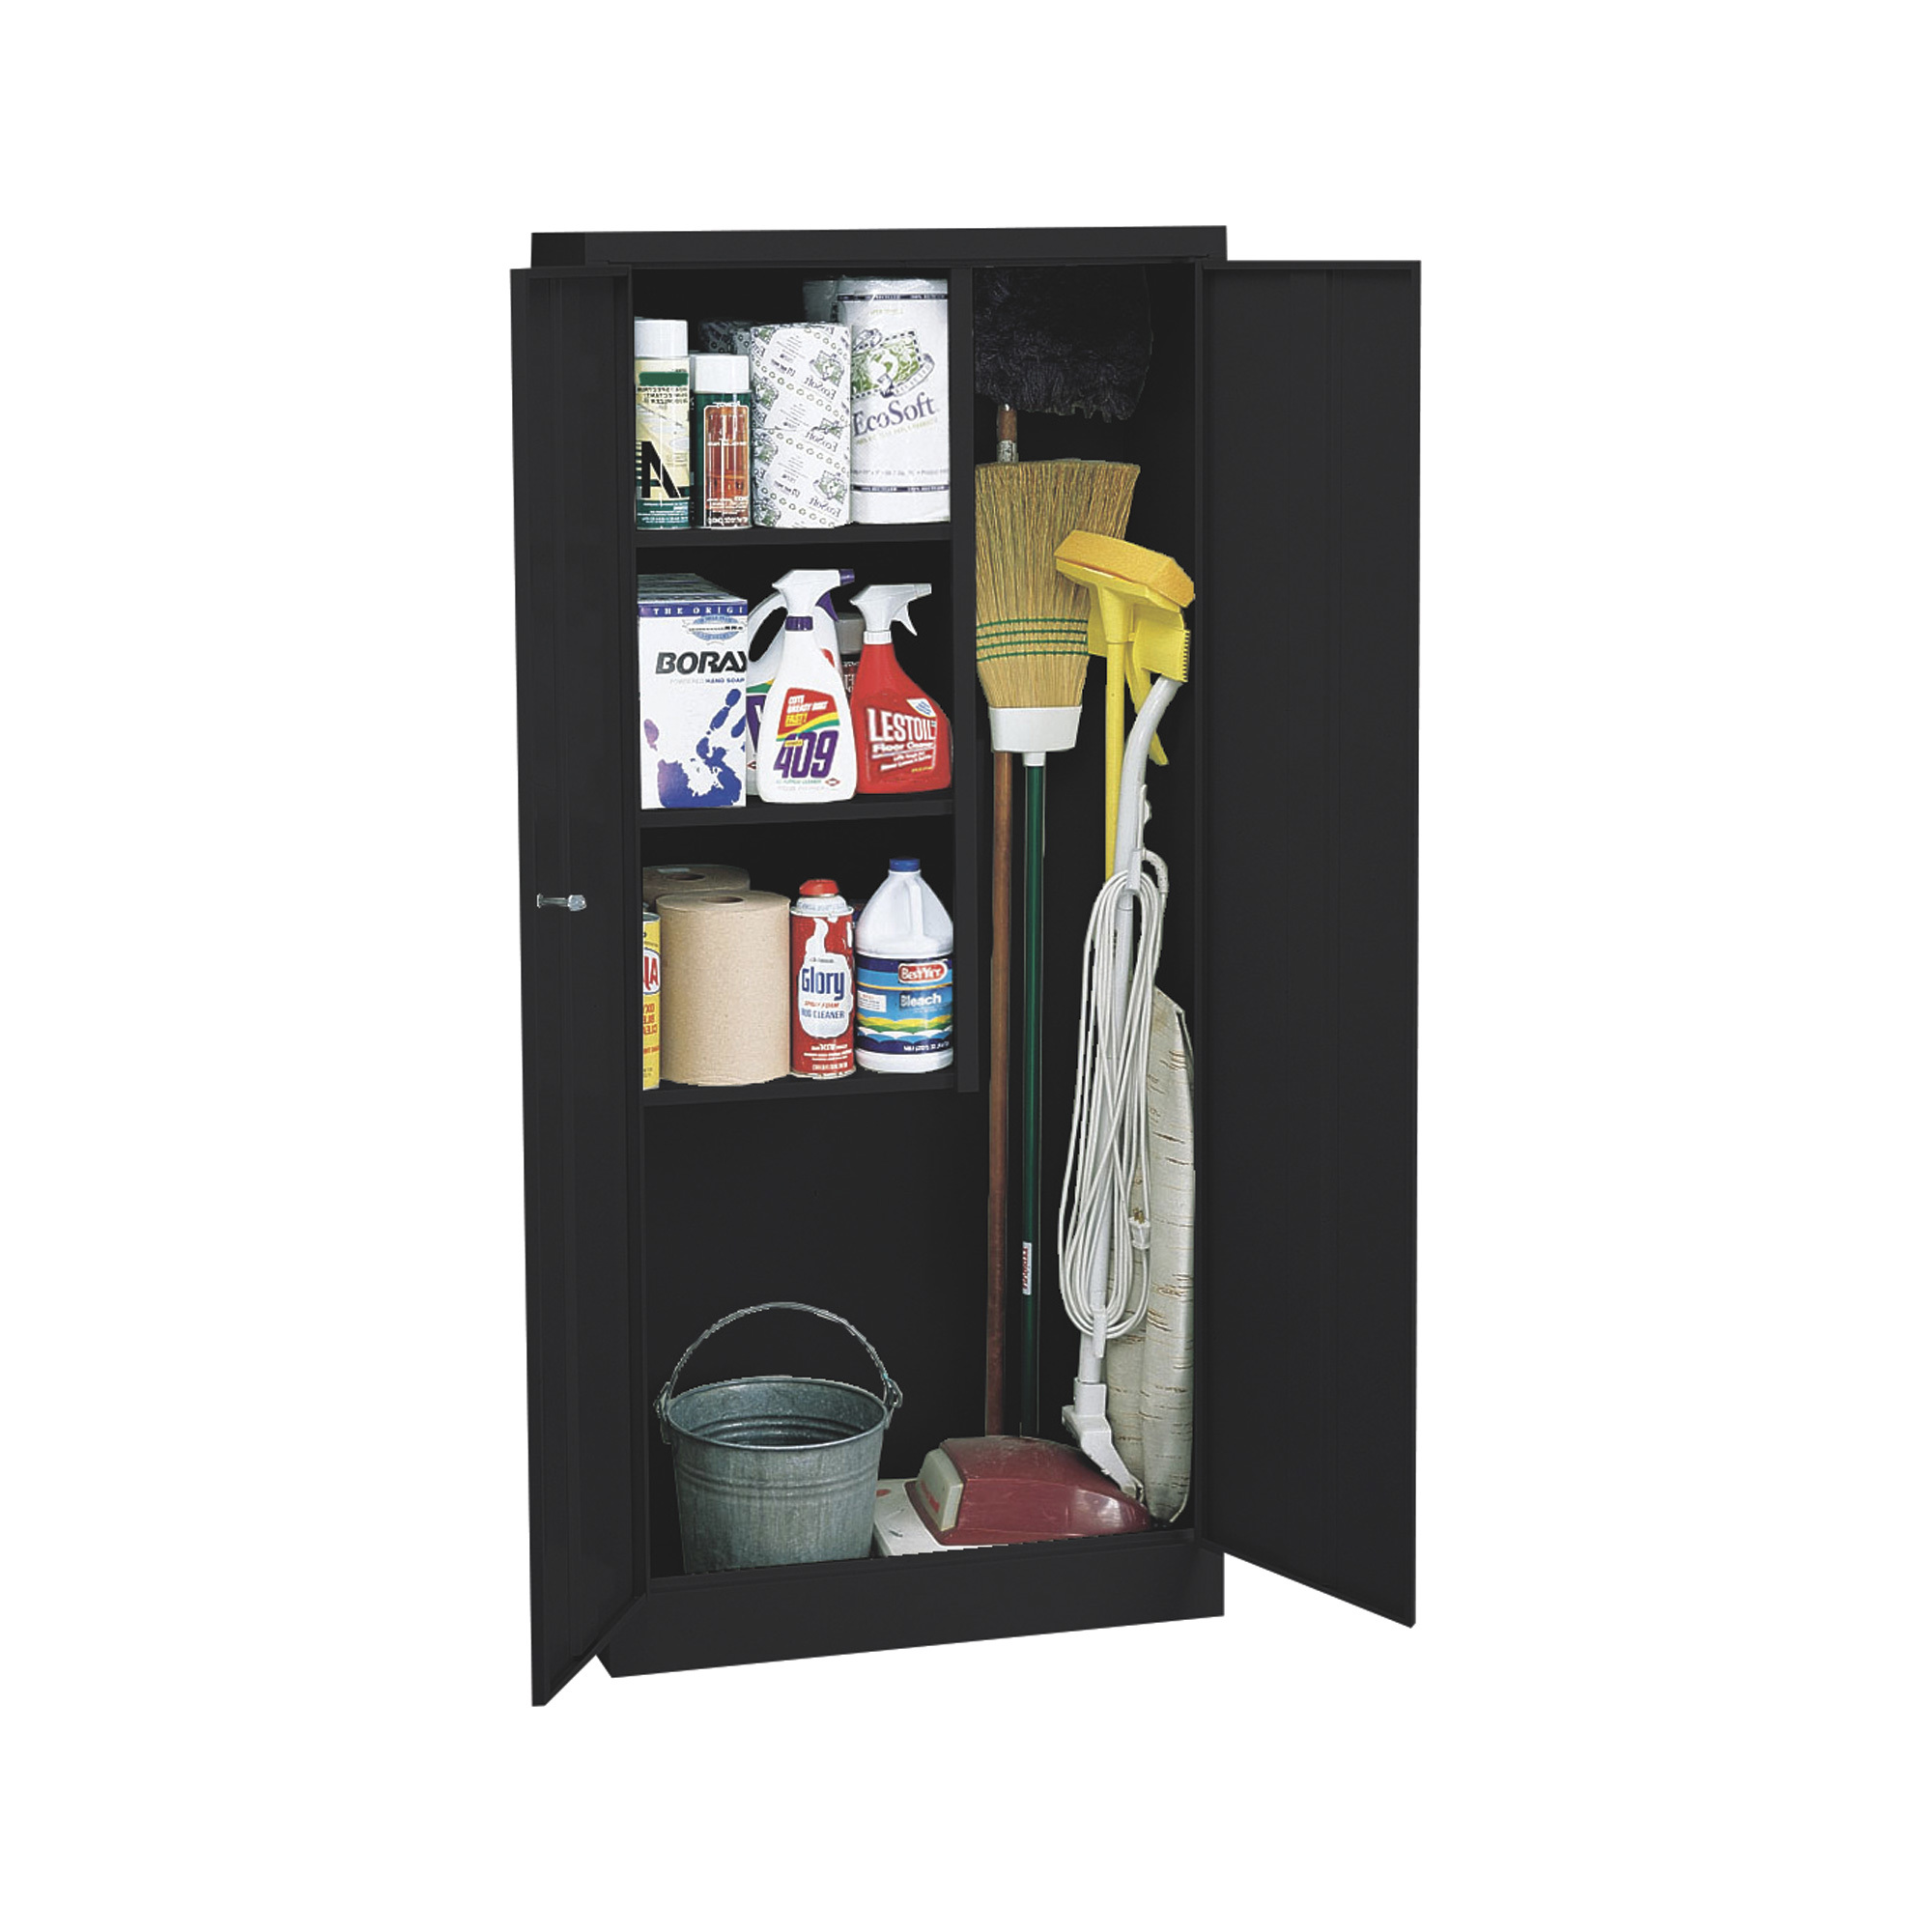 Welded Steel Janitorial Cabinet — 30Inch W x 15Inch D x 66Inch H, Black, Model - Sandusky Lee VFC1301566-09